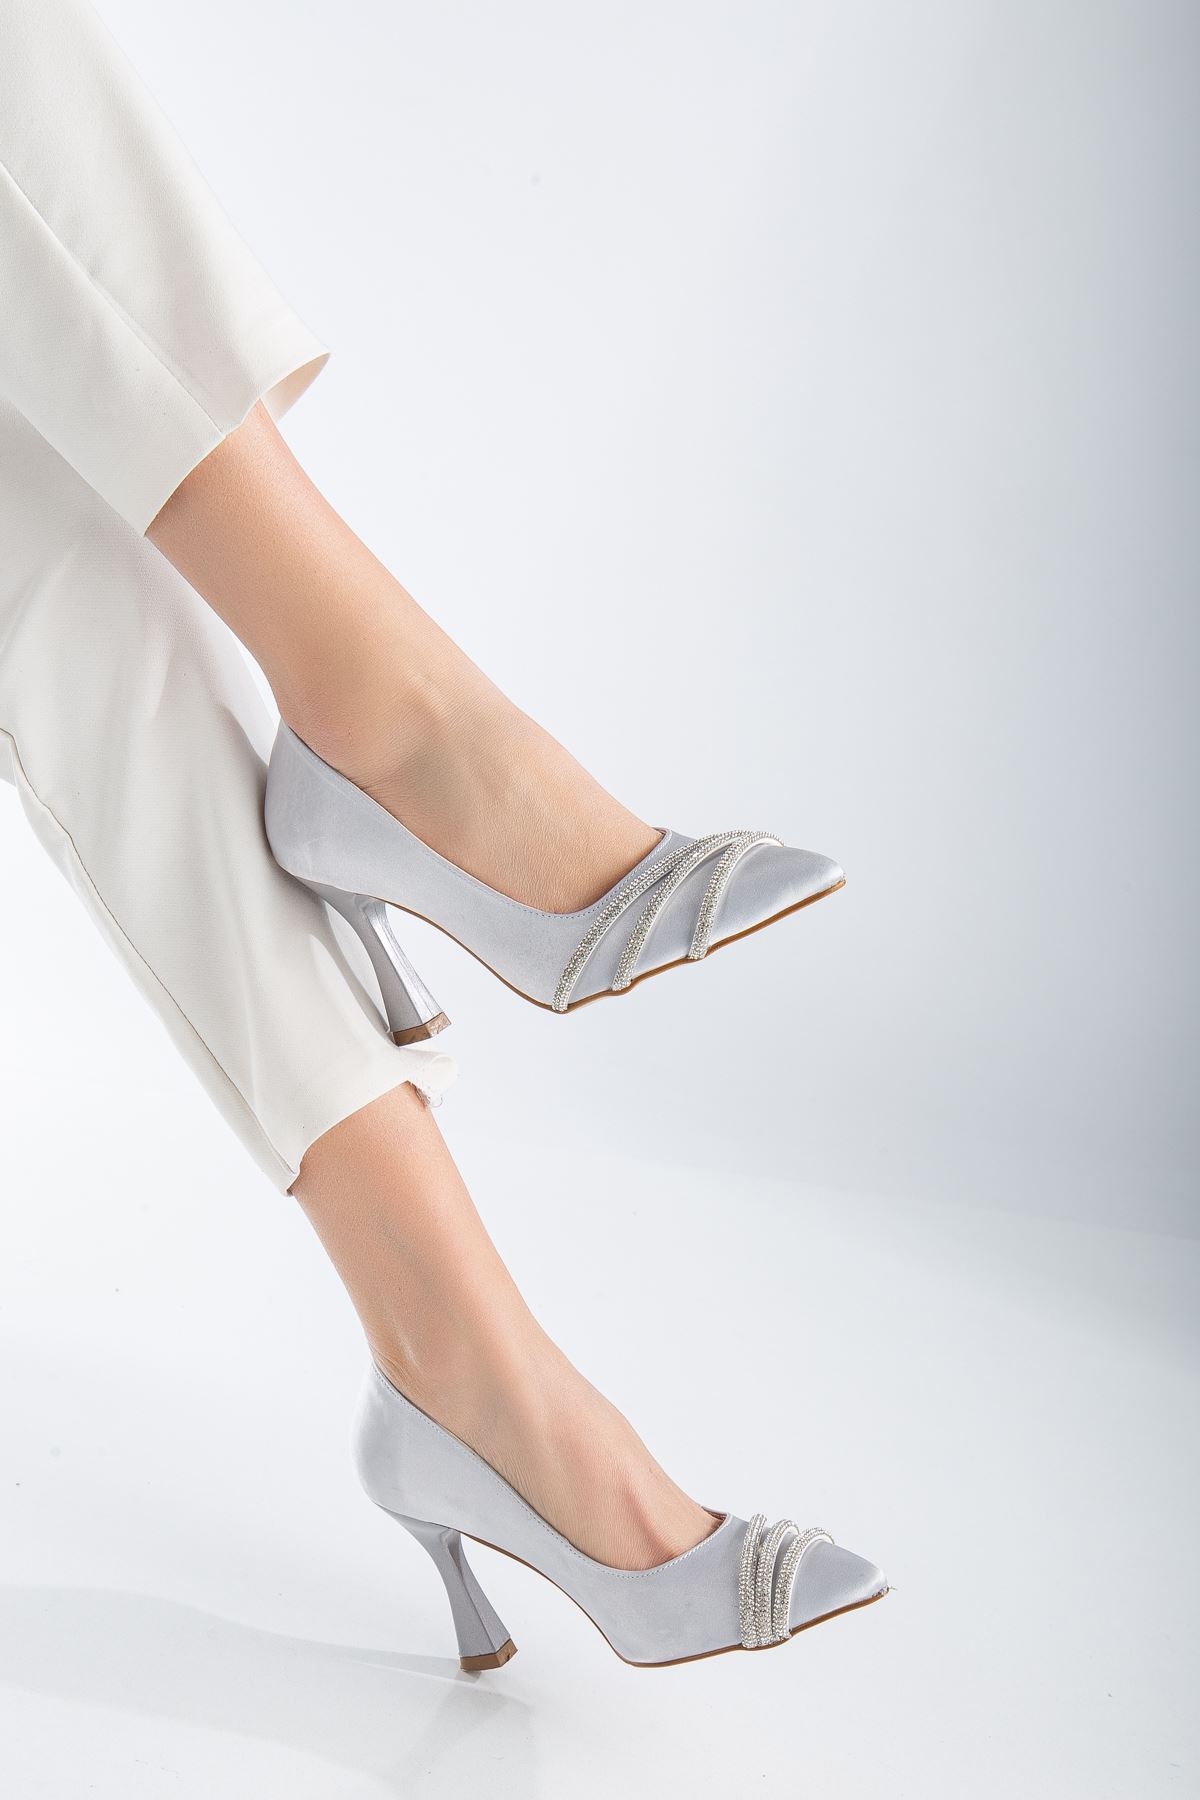 Sayna Gümüş Saten Desenli Taş Detaylı Sivri Burun Topuklu Ayakkabı 